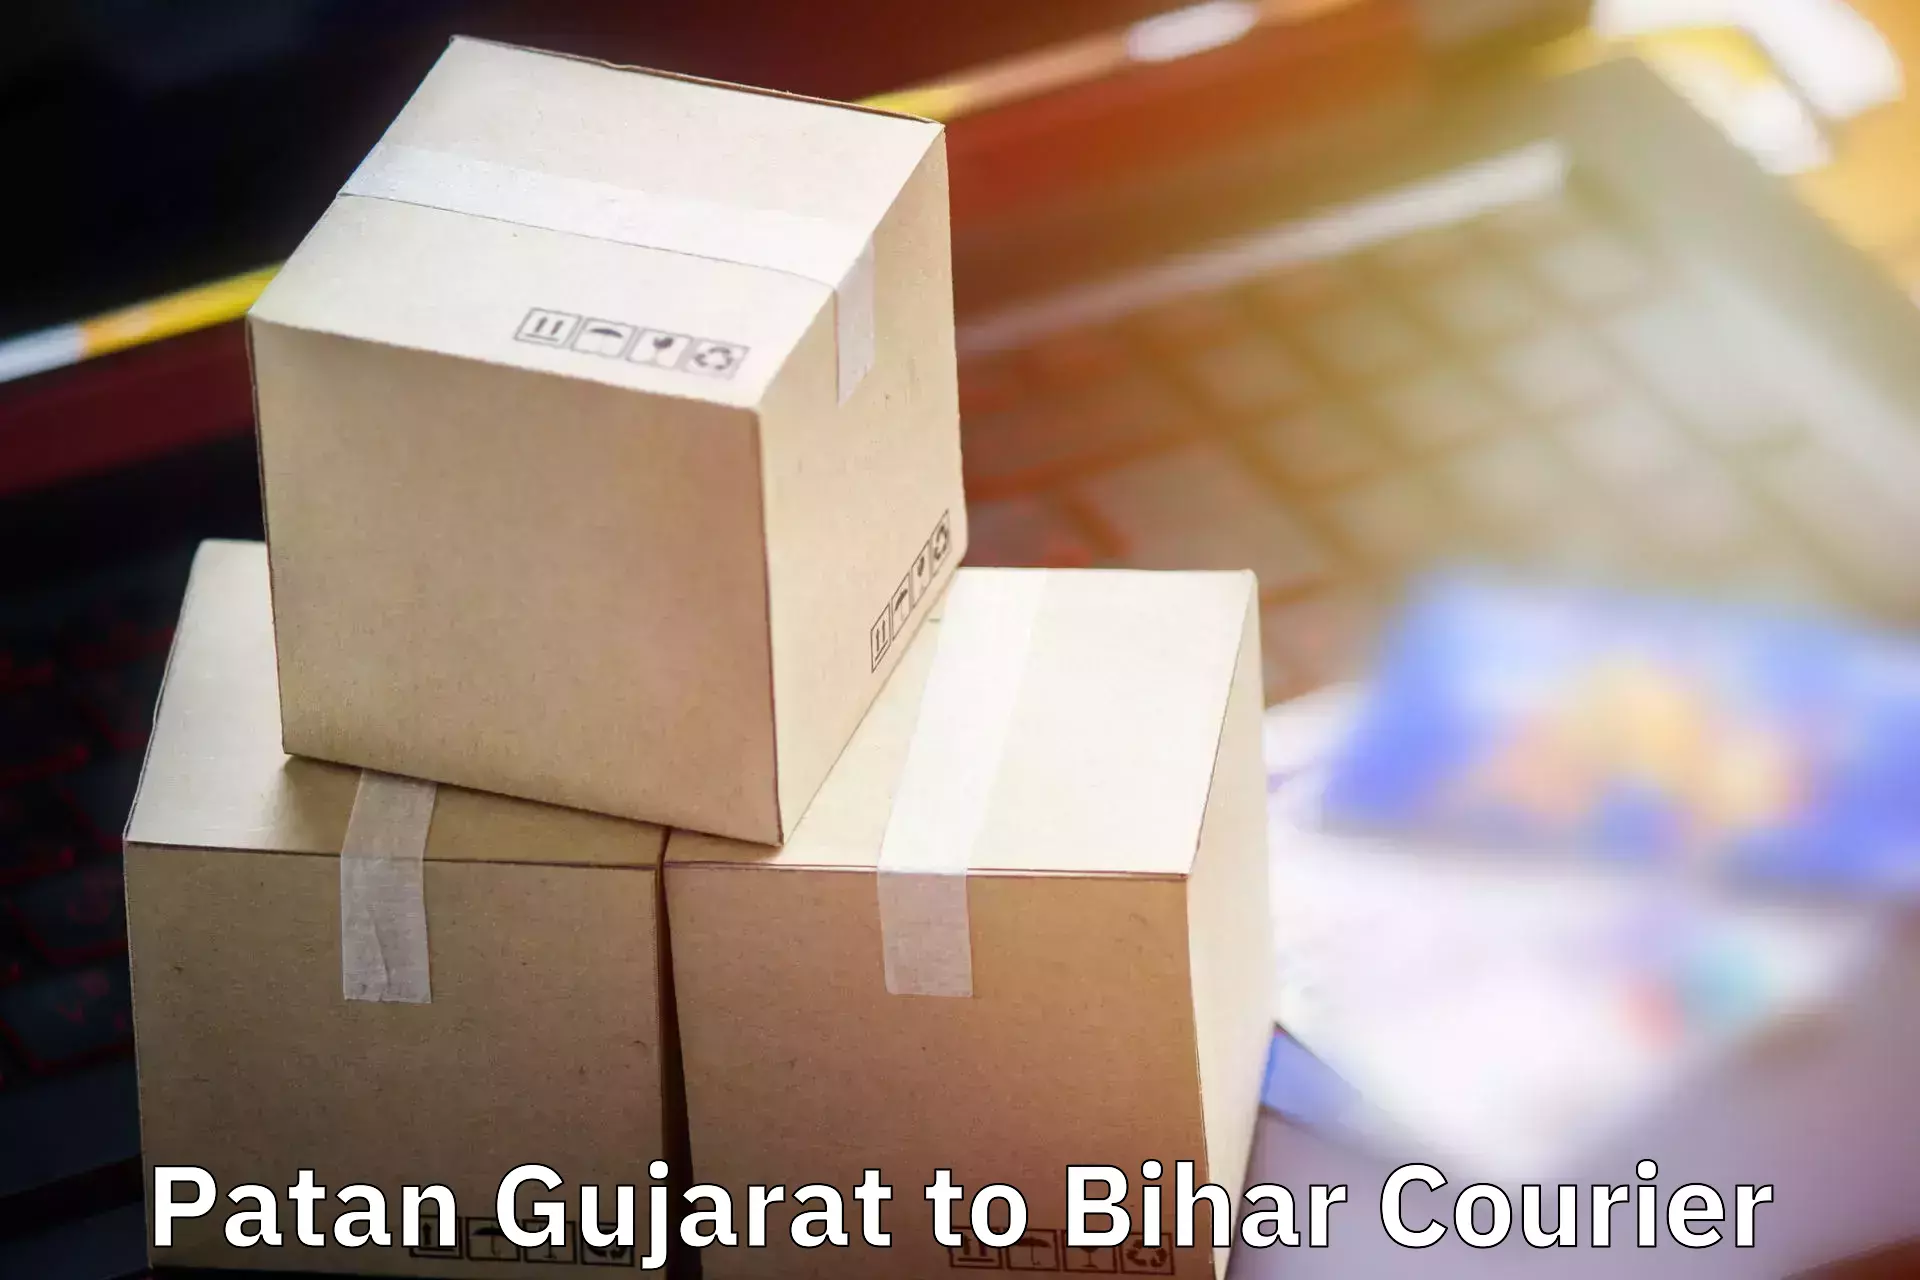 Luggage transport service Patan Gujarat to Gaya